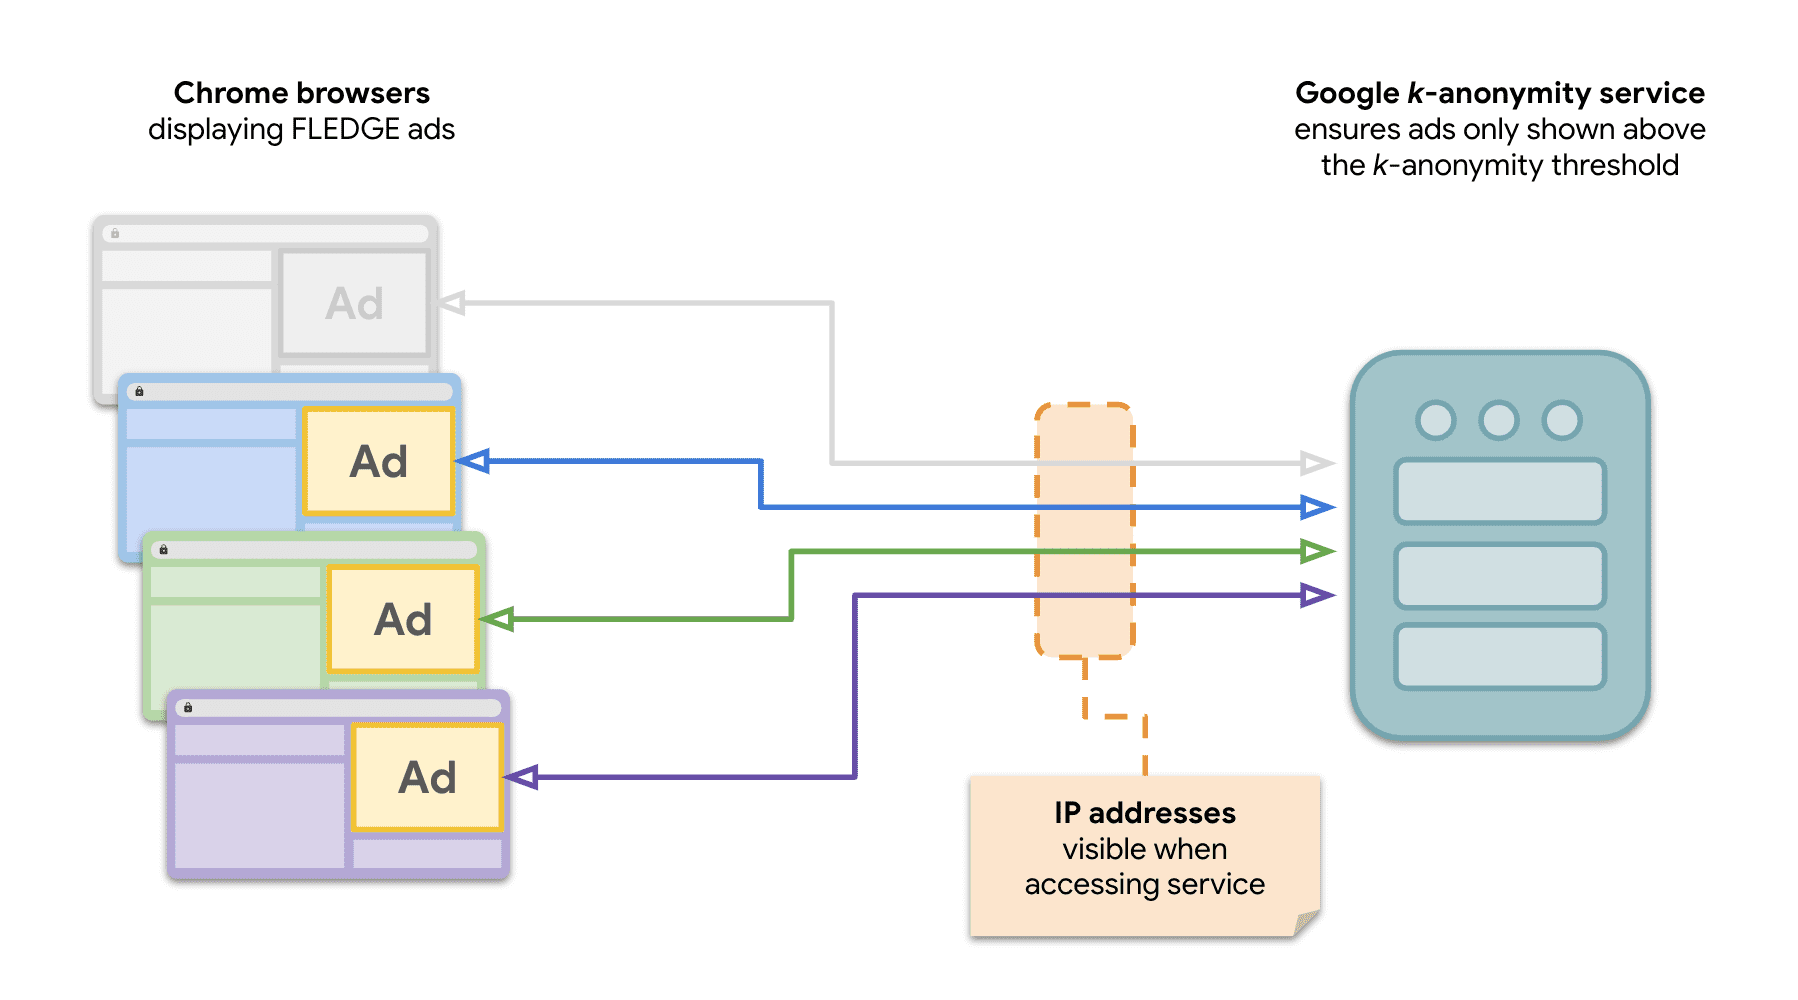 رسم تخطيطي يوضح أن عدة مواقع إلكترونية في Chrome ترسل طلبات إلى خادم k-anonymity لعرض إعلانات FLEDGE.